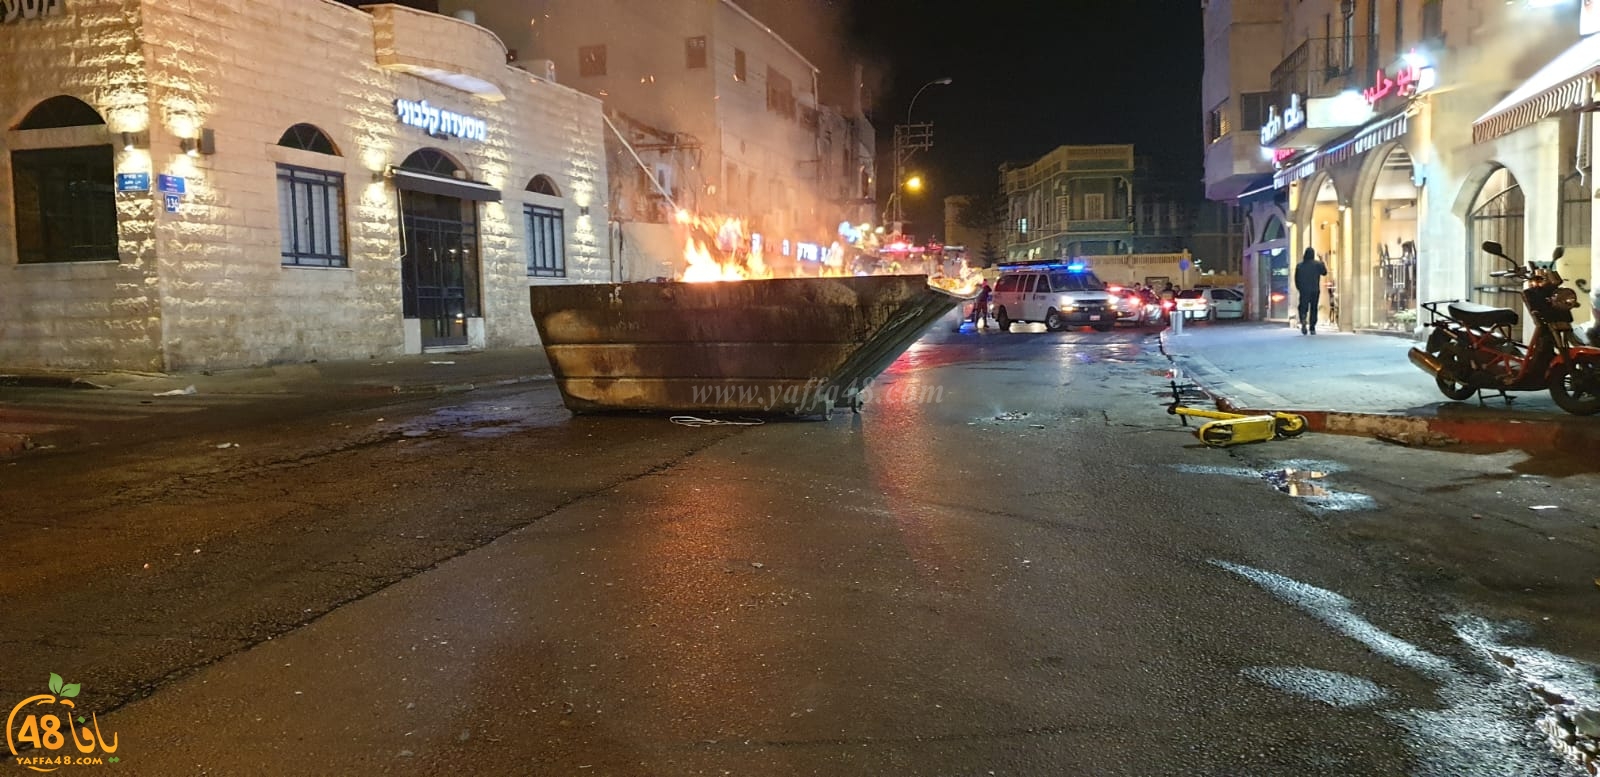  فيديو: تجدد الاحتجاجات في شارع ييفت بمدينة يافا